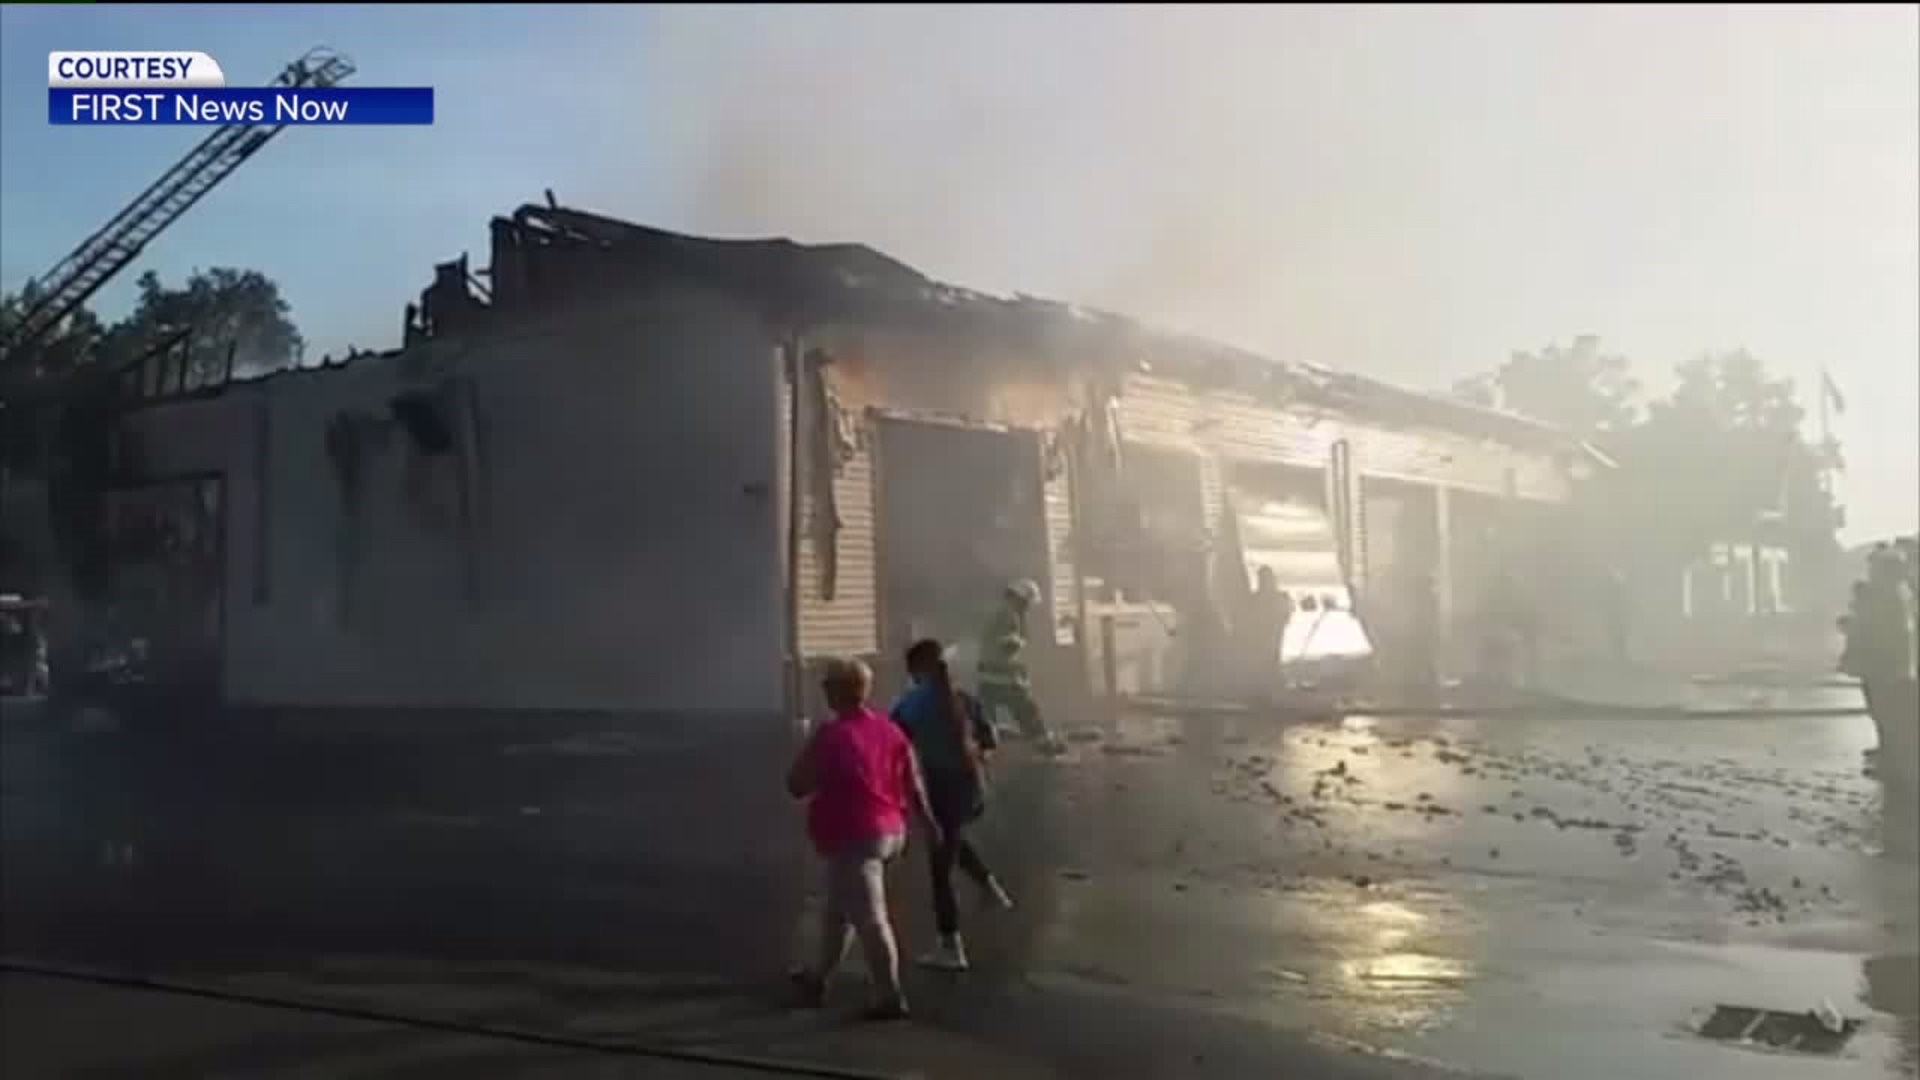 Fire Company Burns in Tioga County